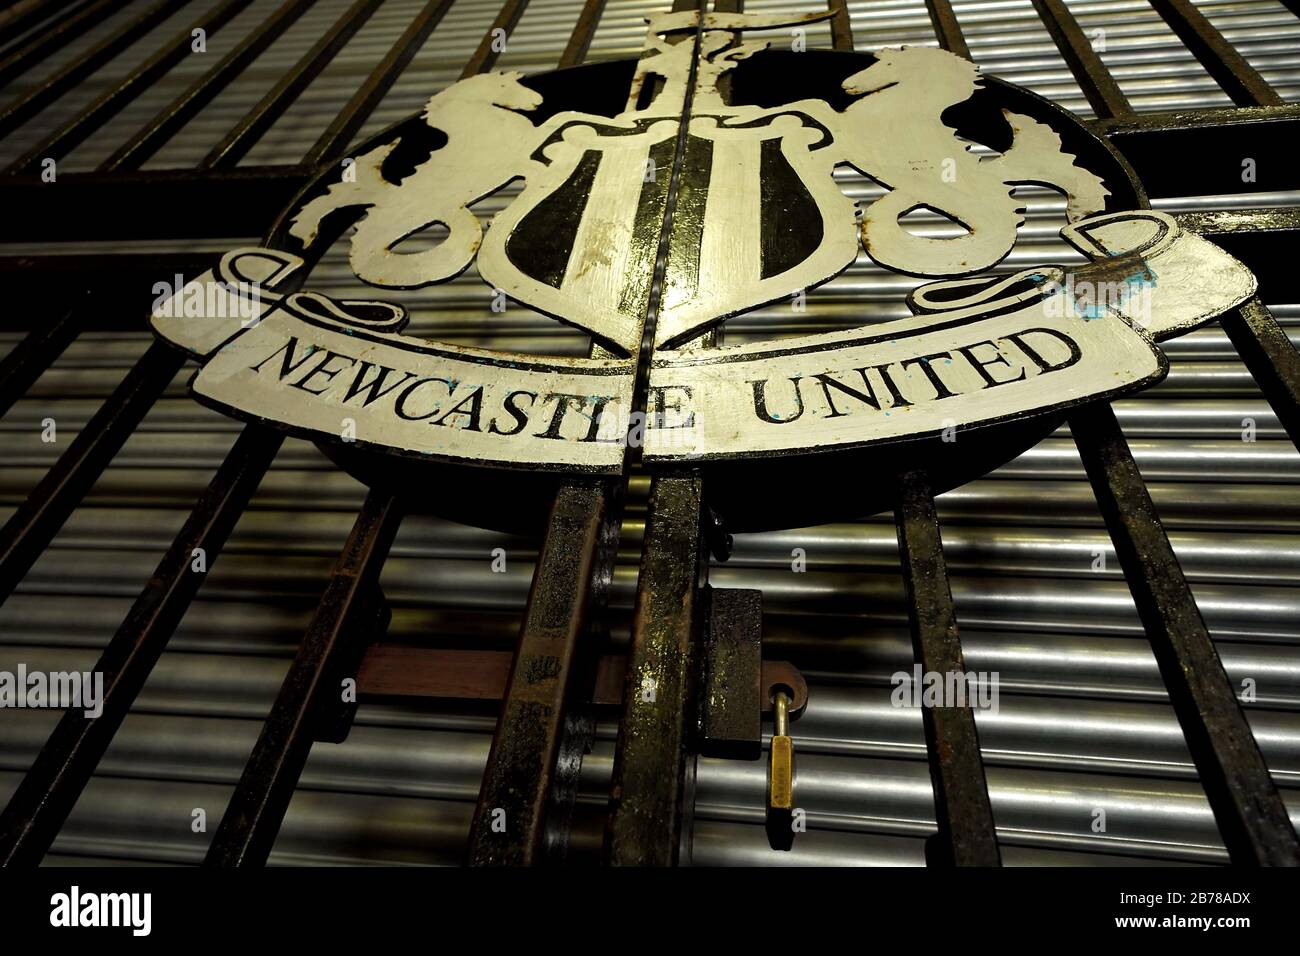 Eine allgemeine Ansicht des Schildes von Newcastle United vor dem St James' Park, dem Sitz des Newcastle United Football Club, nach der gestrigen Ankündigung, dass die Premier League alle Spiele bis Samstag, den 4. April 2020 ausgesetzt hat. Stockfoto